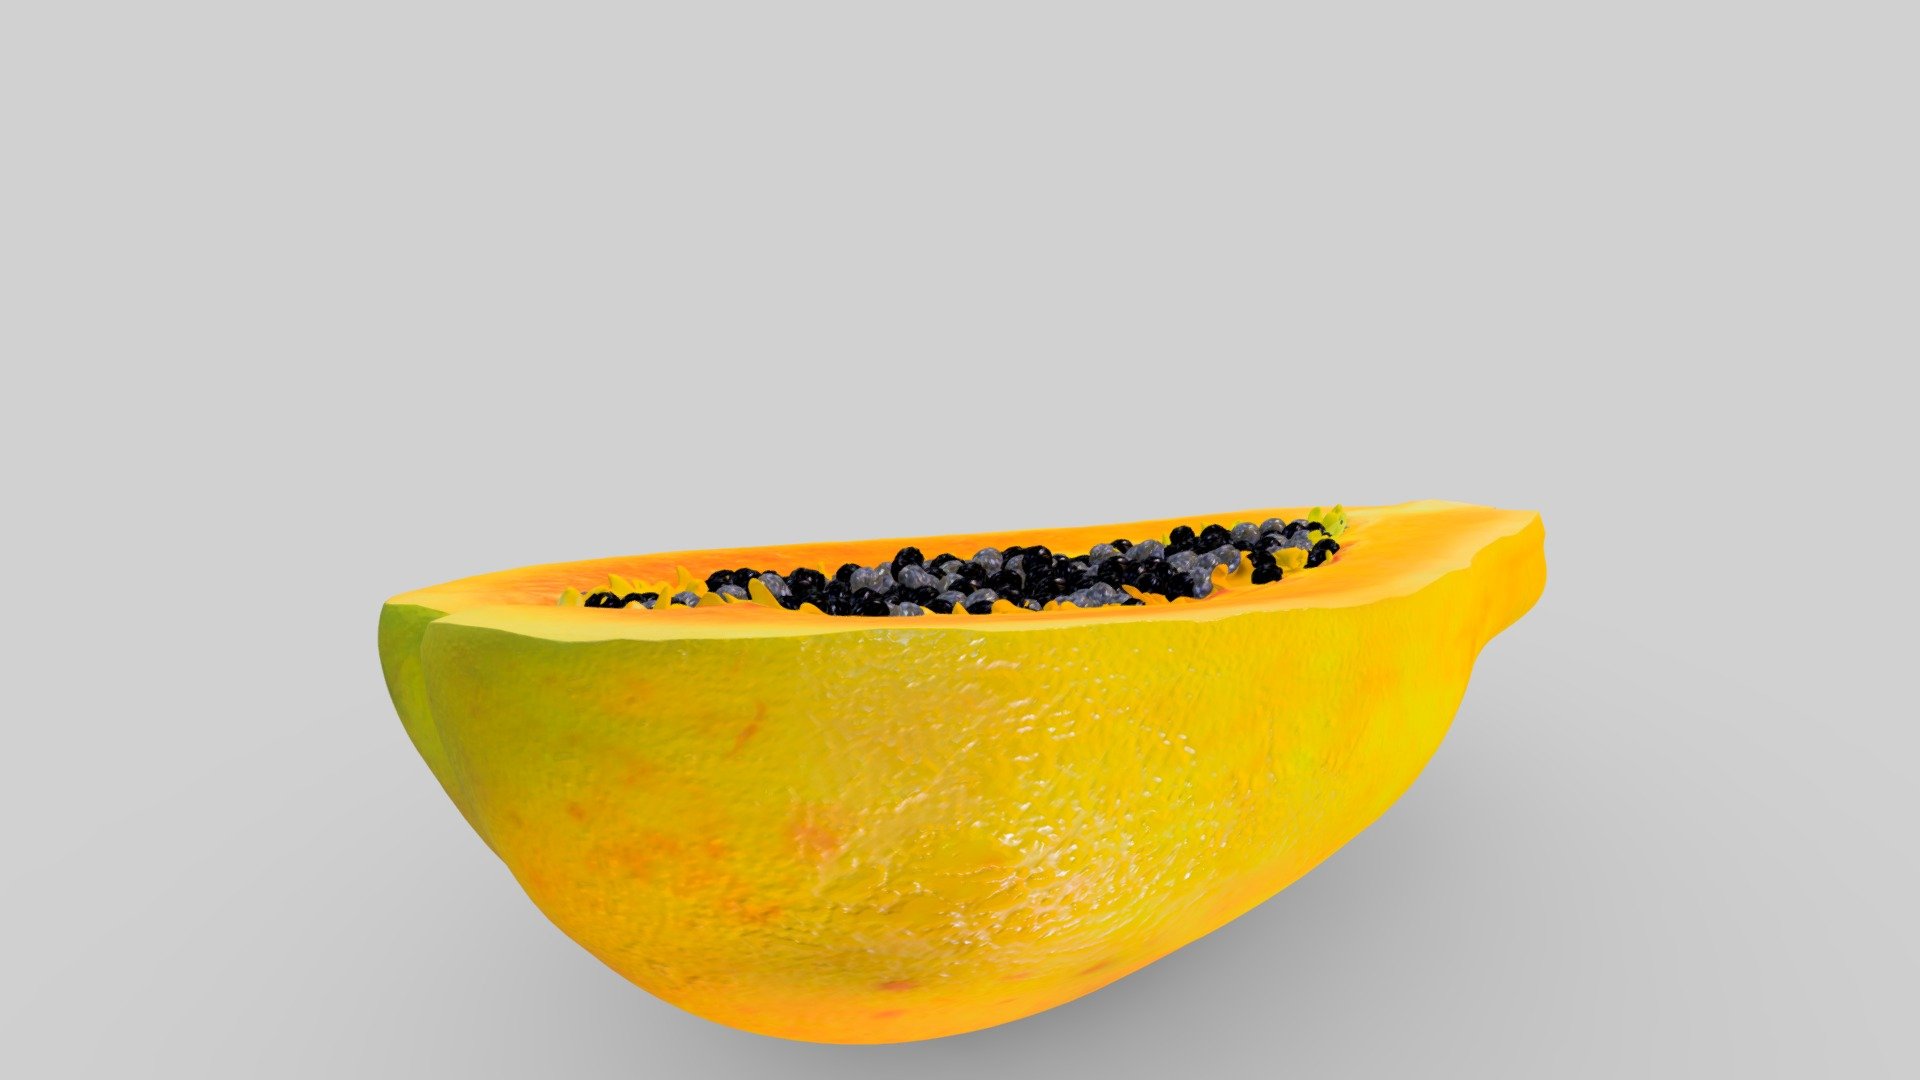 Photorealistic  Papaya Fruits 3D Model - Papaya Fruits 3D Model - 3D model by Kailash H Kanojia (@KailashHKanojia) 3d model